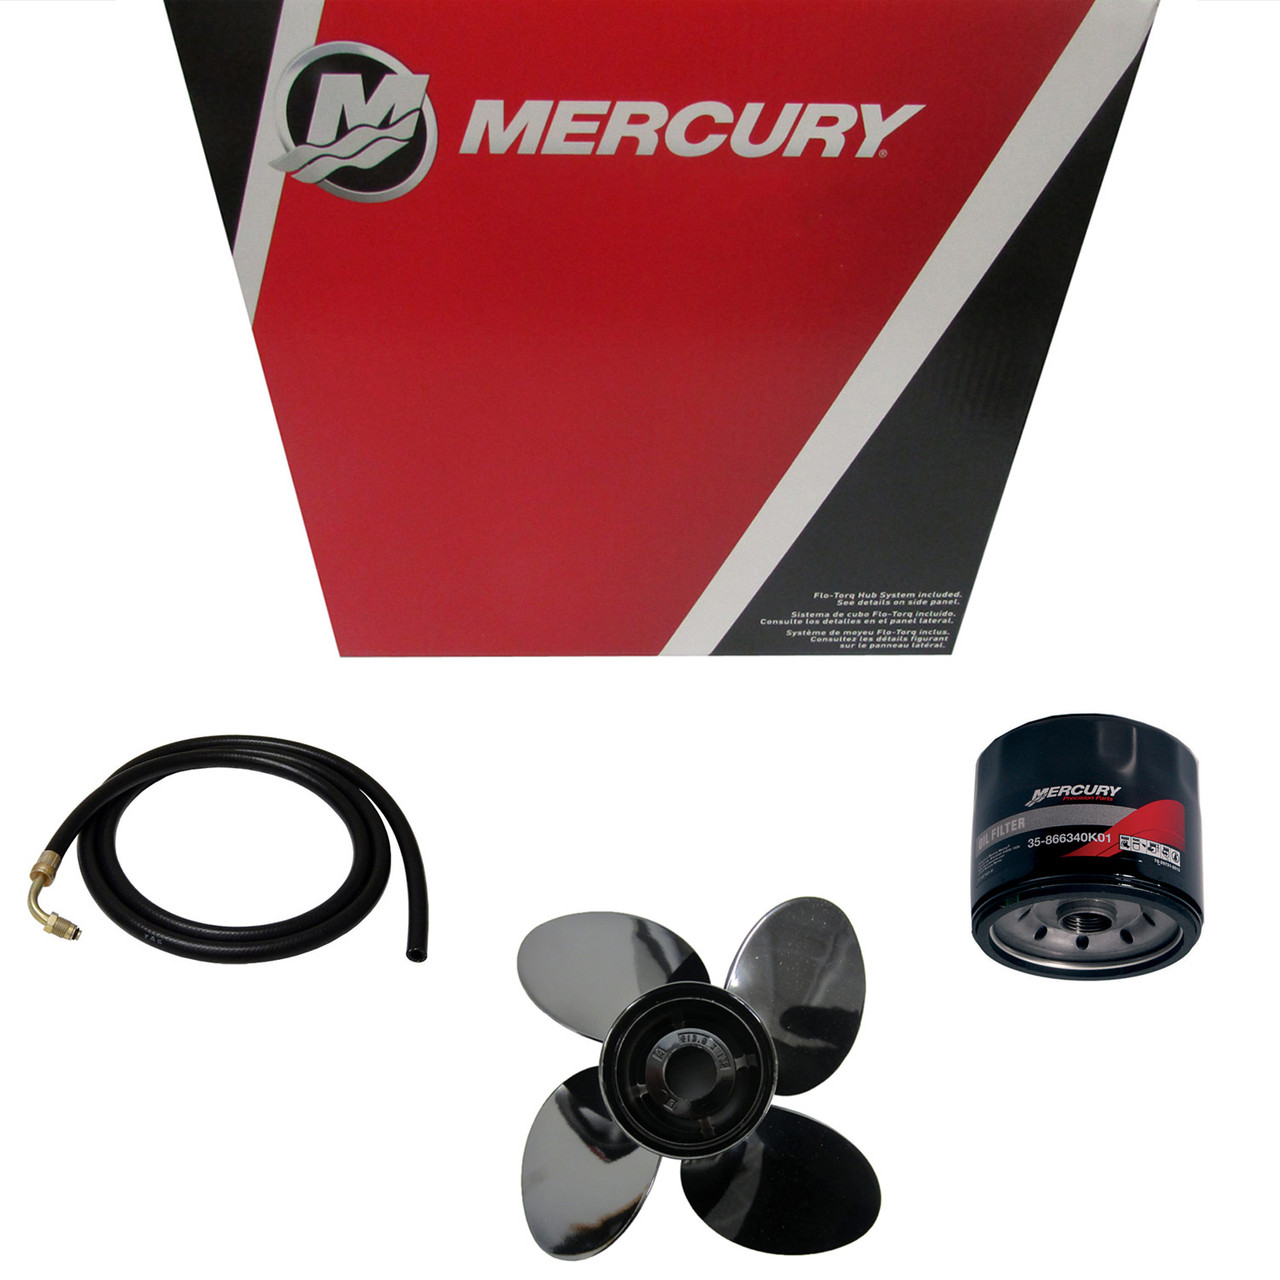 Mercury Marine / Mercruiser New OEM Stator Assy, 398-852386T8